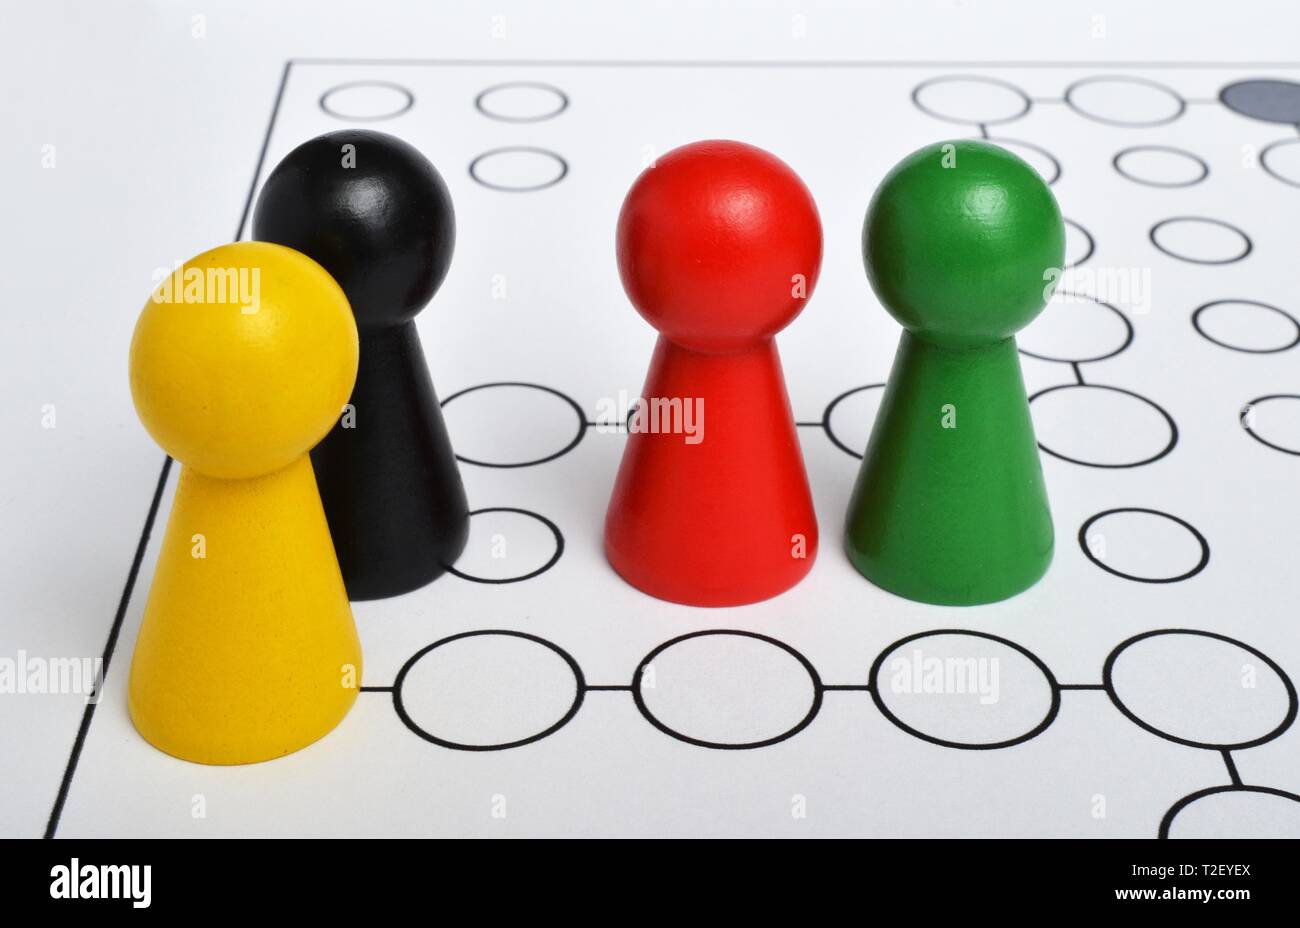 Las cifras en negro, amarillo, rojo, verde, como símbolo de los partidos políticos en un campo de juego neutral, Alemania Foto de stock